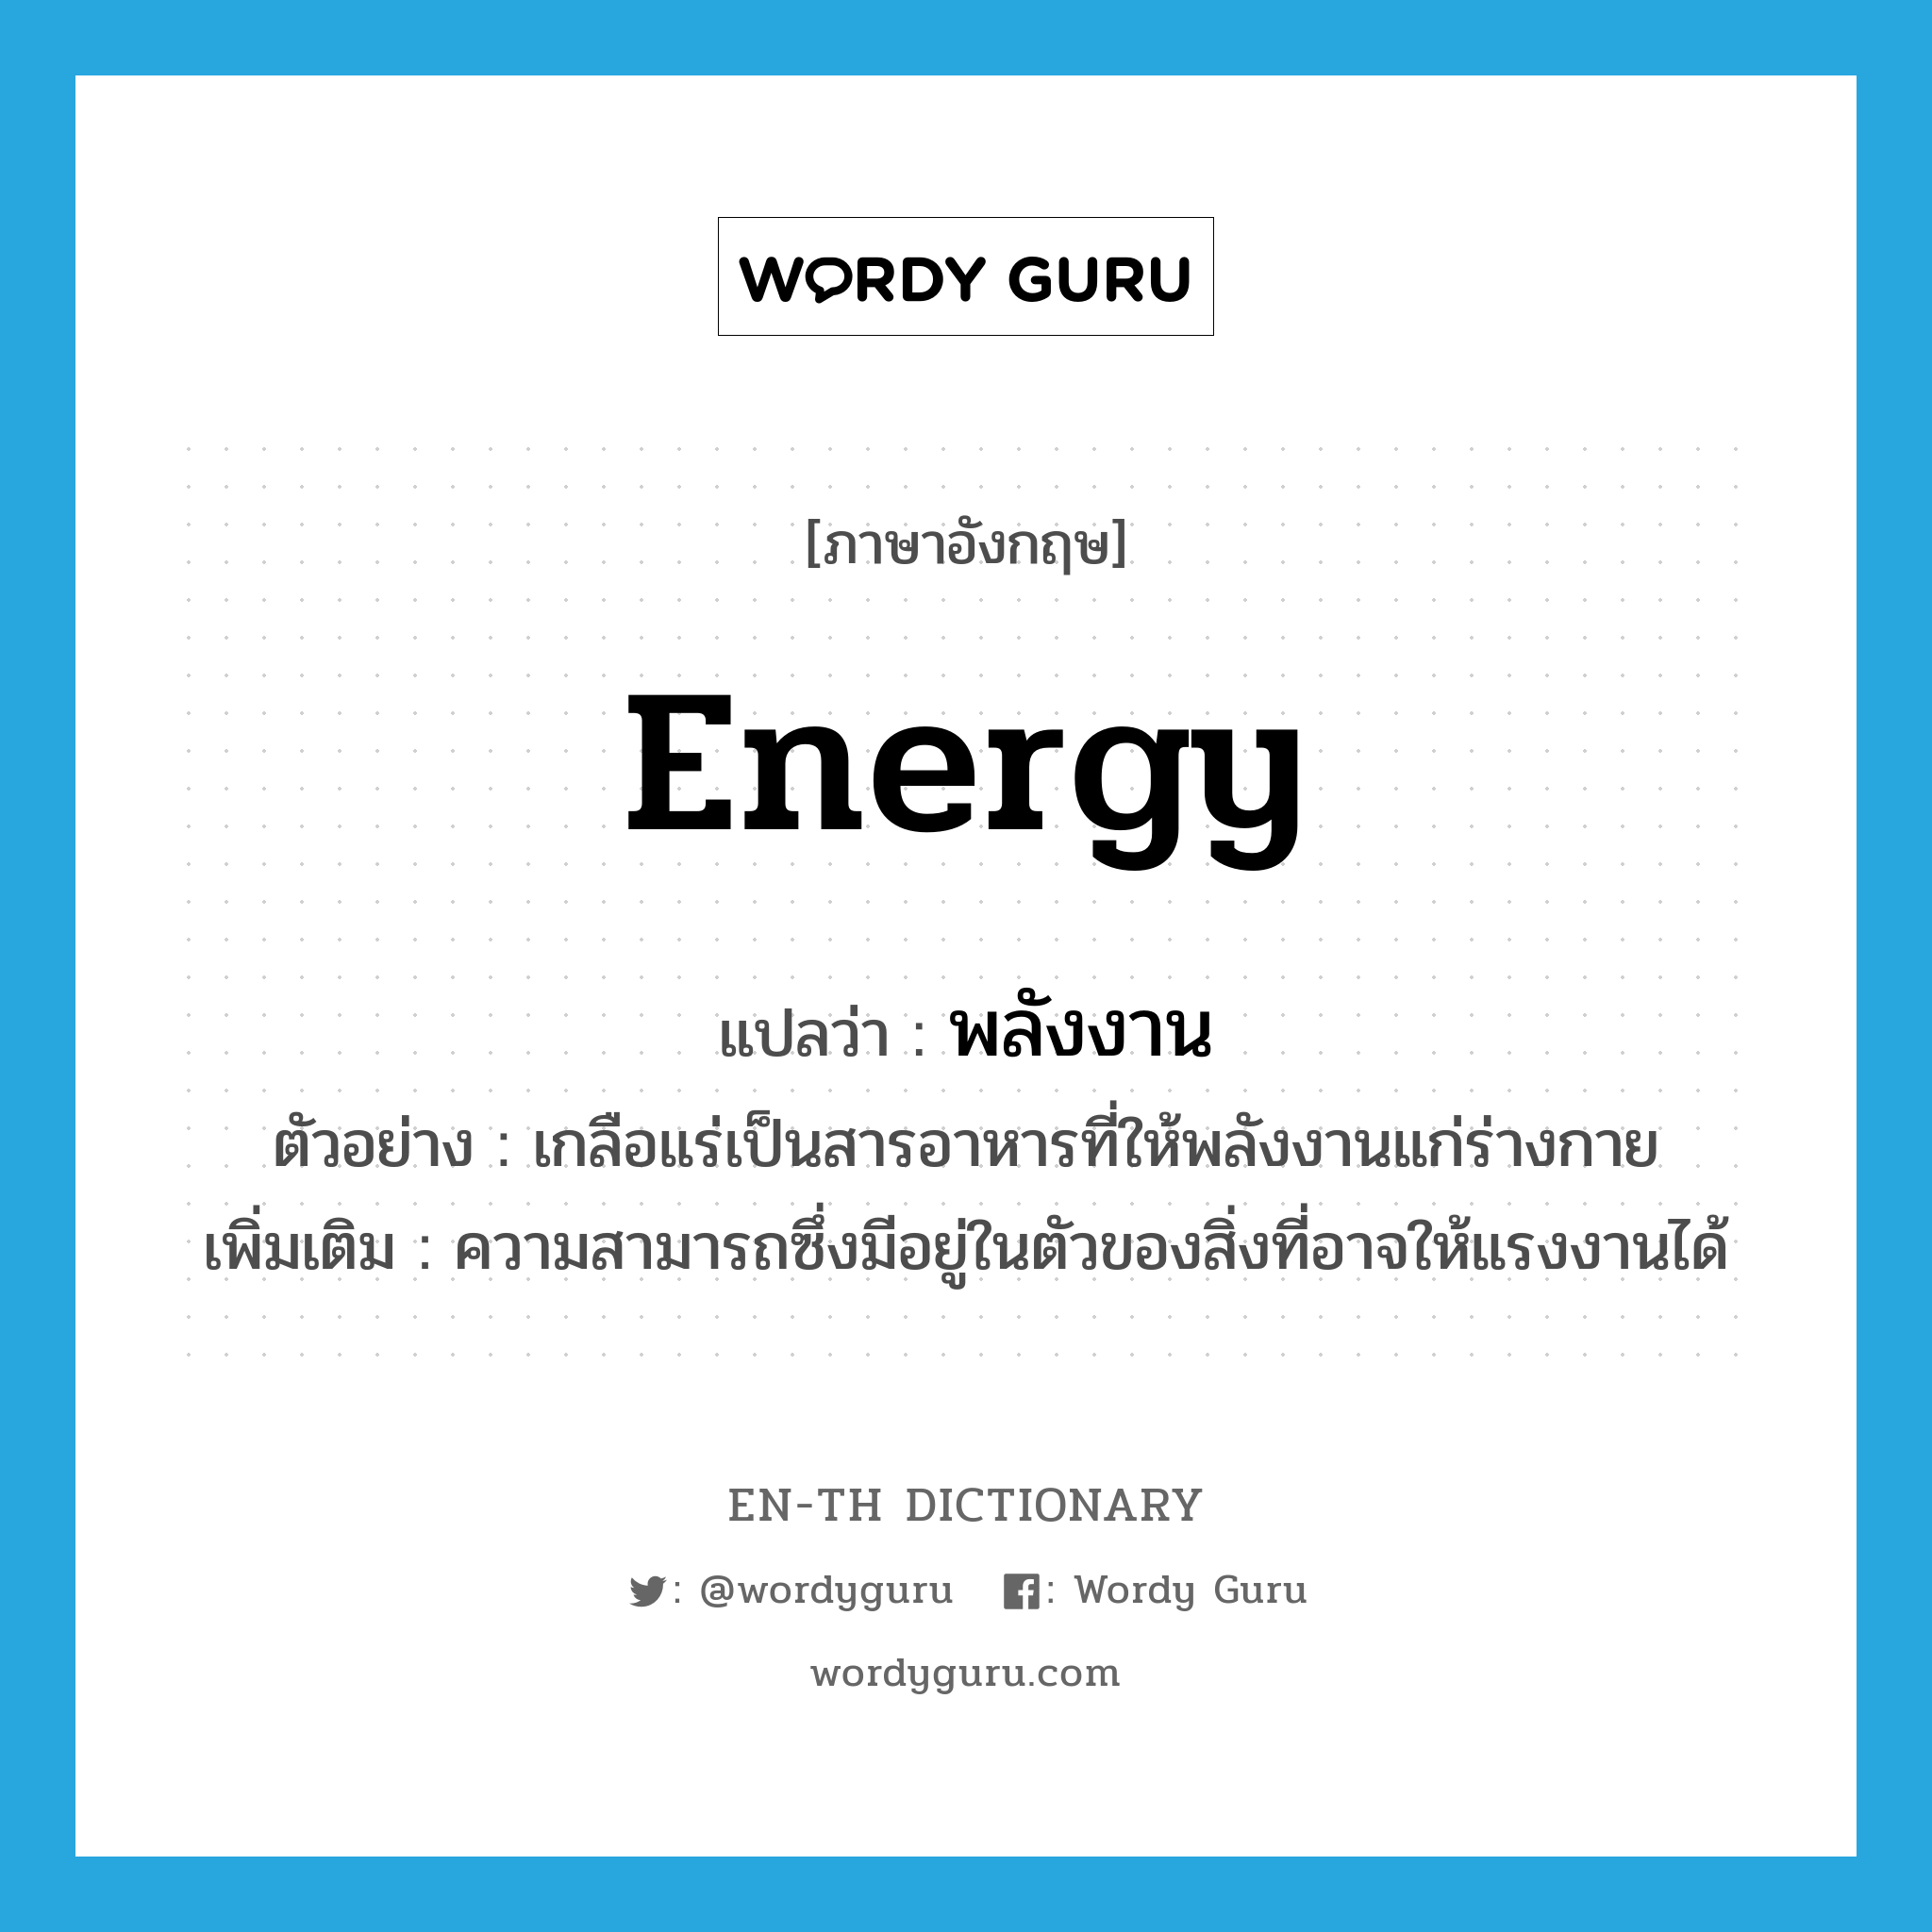 พลังงาน ภาษาอังกฤษ?, คำศัพท์ภาษาอังกฤษ พลังงาน แปลว่า energy ประเภท N ตัวอย่าง เกลือแร่เป็นสารอาหารที่ให้พลังงานแก่ร่างกาย เพิ่มเติม ความสามารถซึ่งมีอยู่ในตัวของสิ่งที่อาจให้แรงงานได้ หมวด N